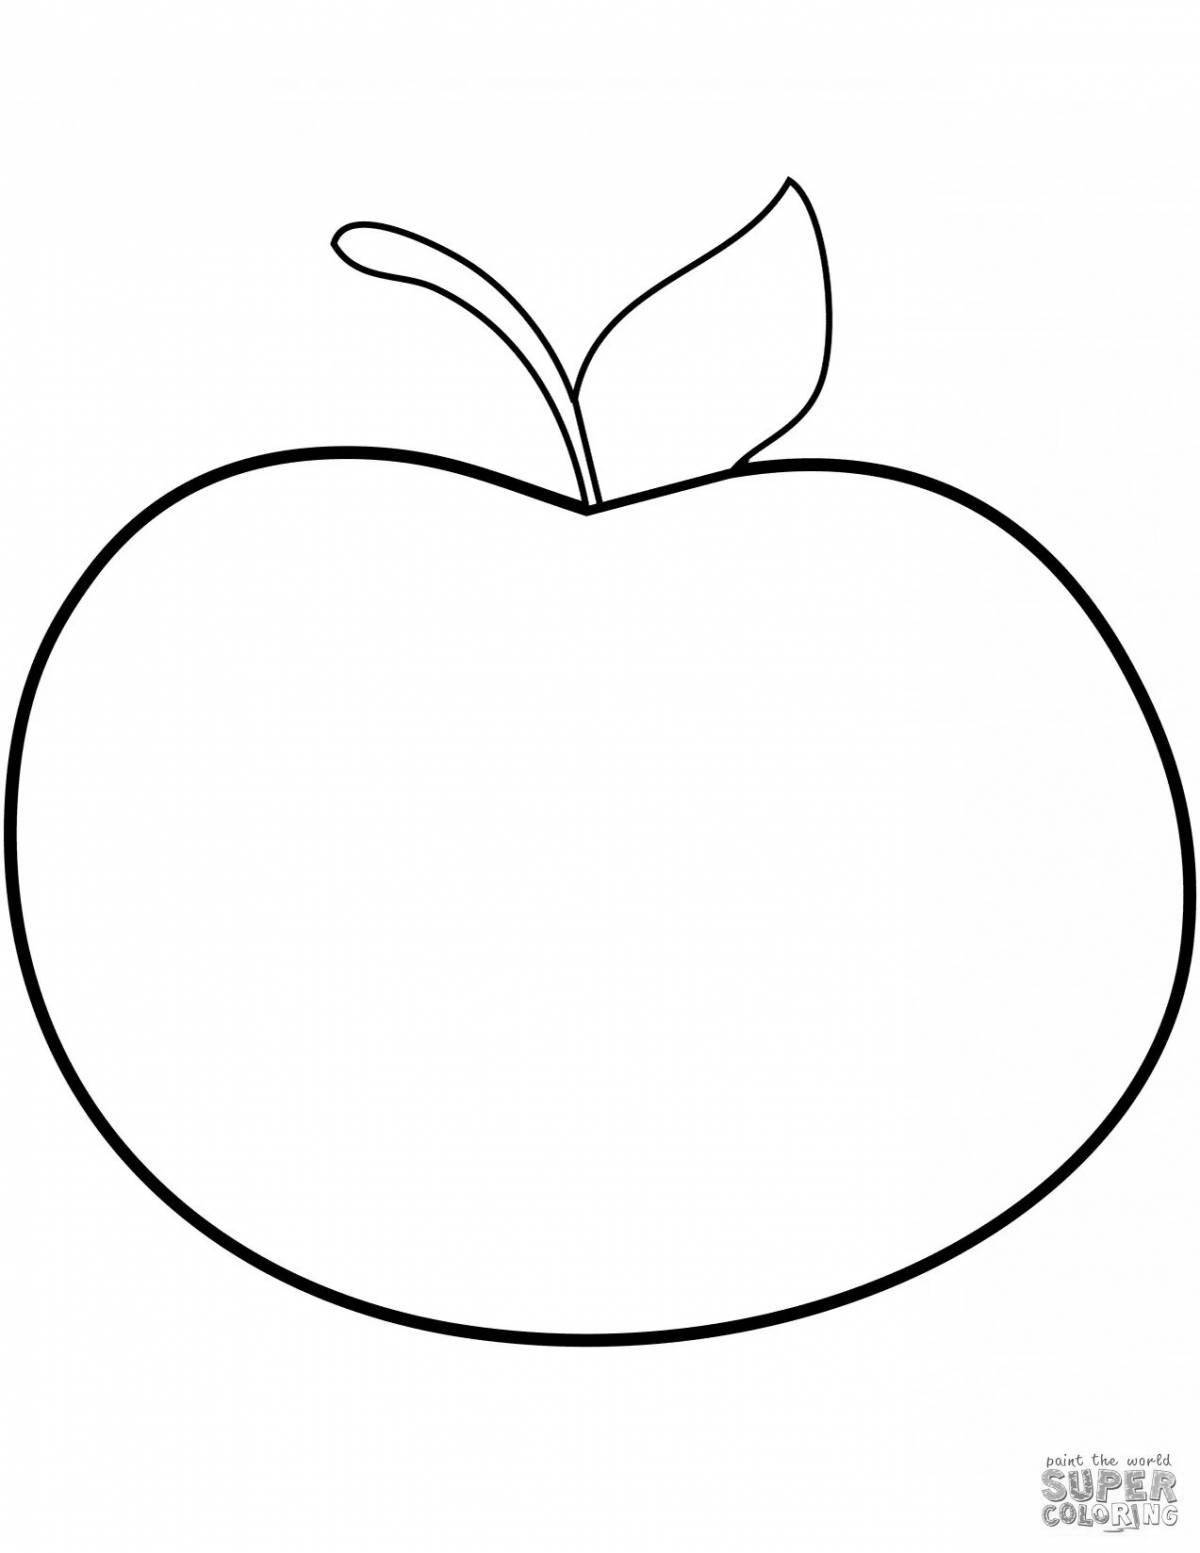 Раскраска с игривым рисунком яблока